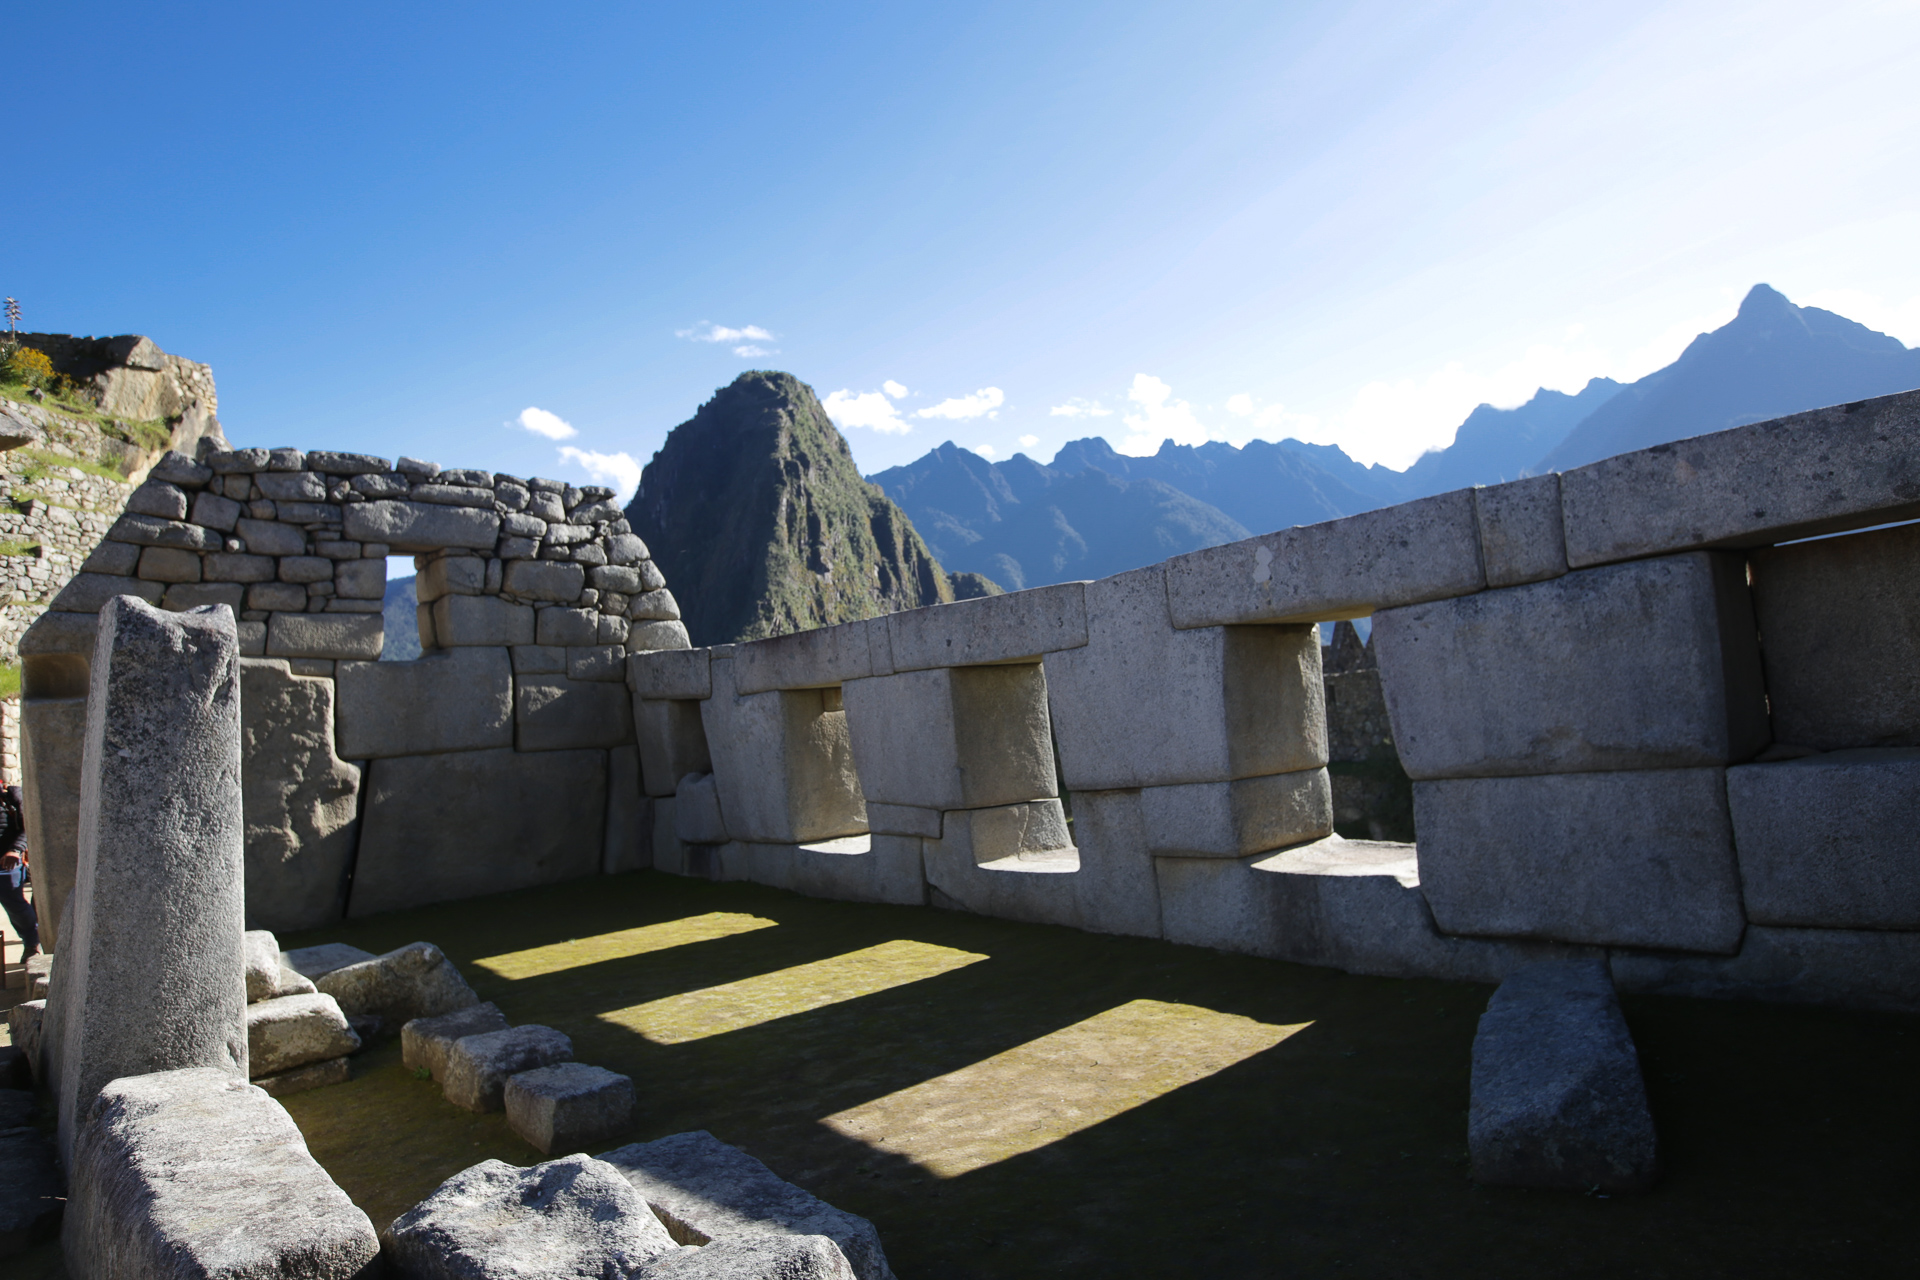  Le temple des 3 fenêtres - Machu Picchu